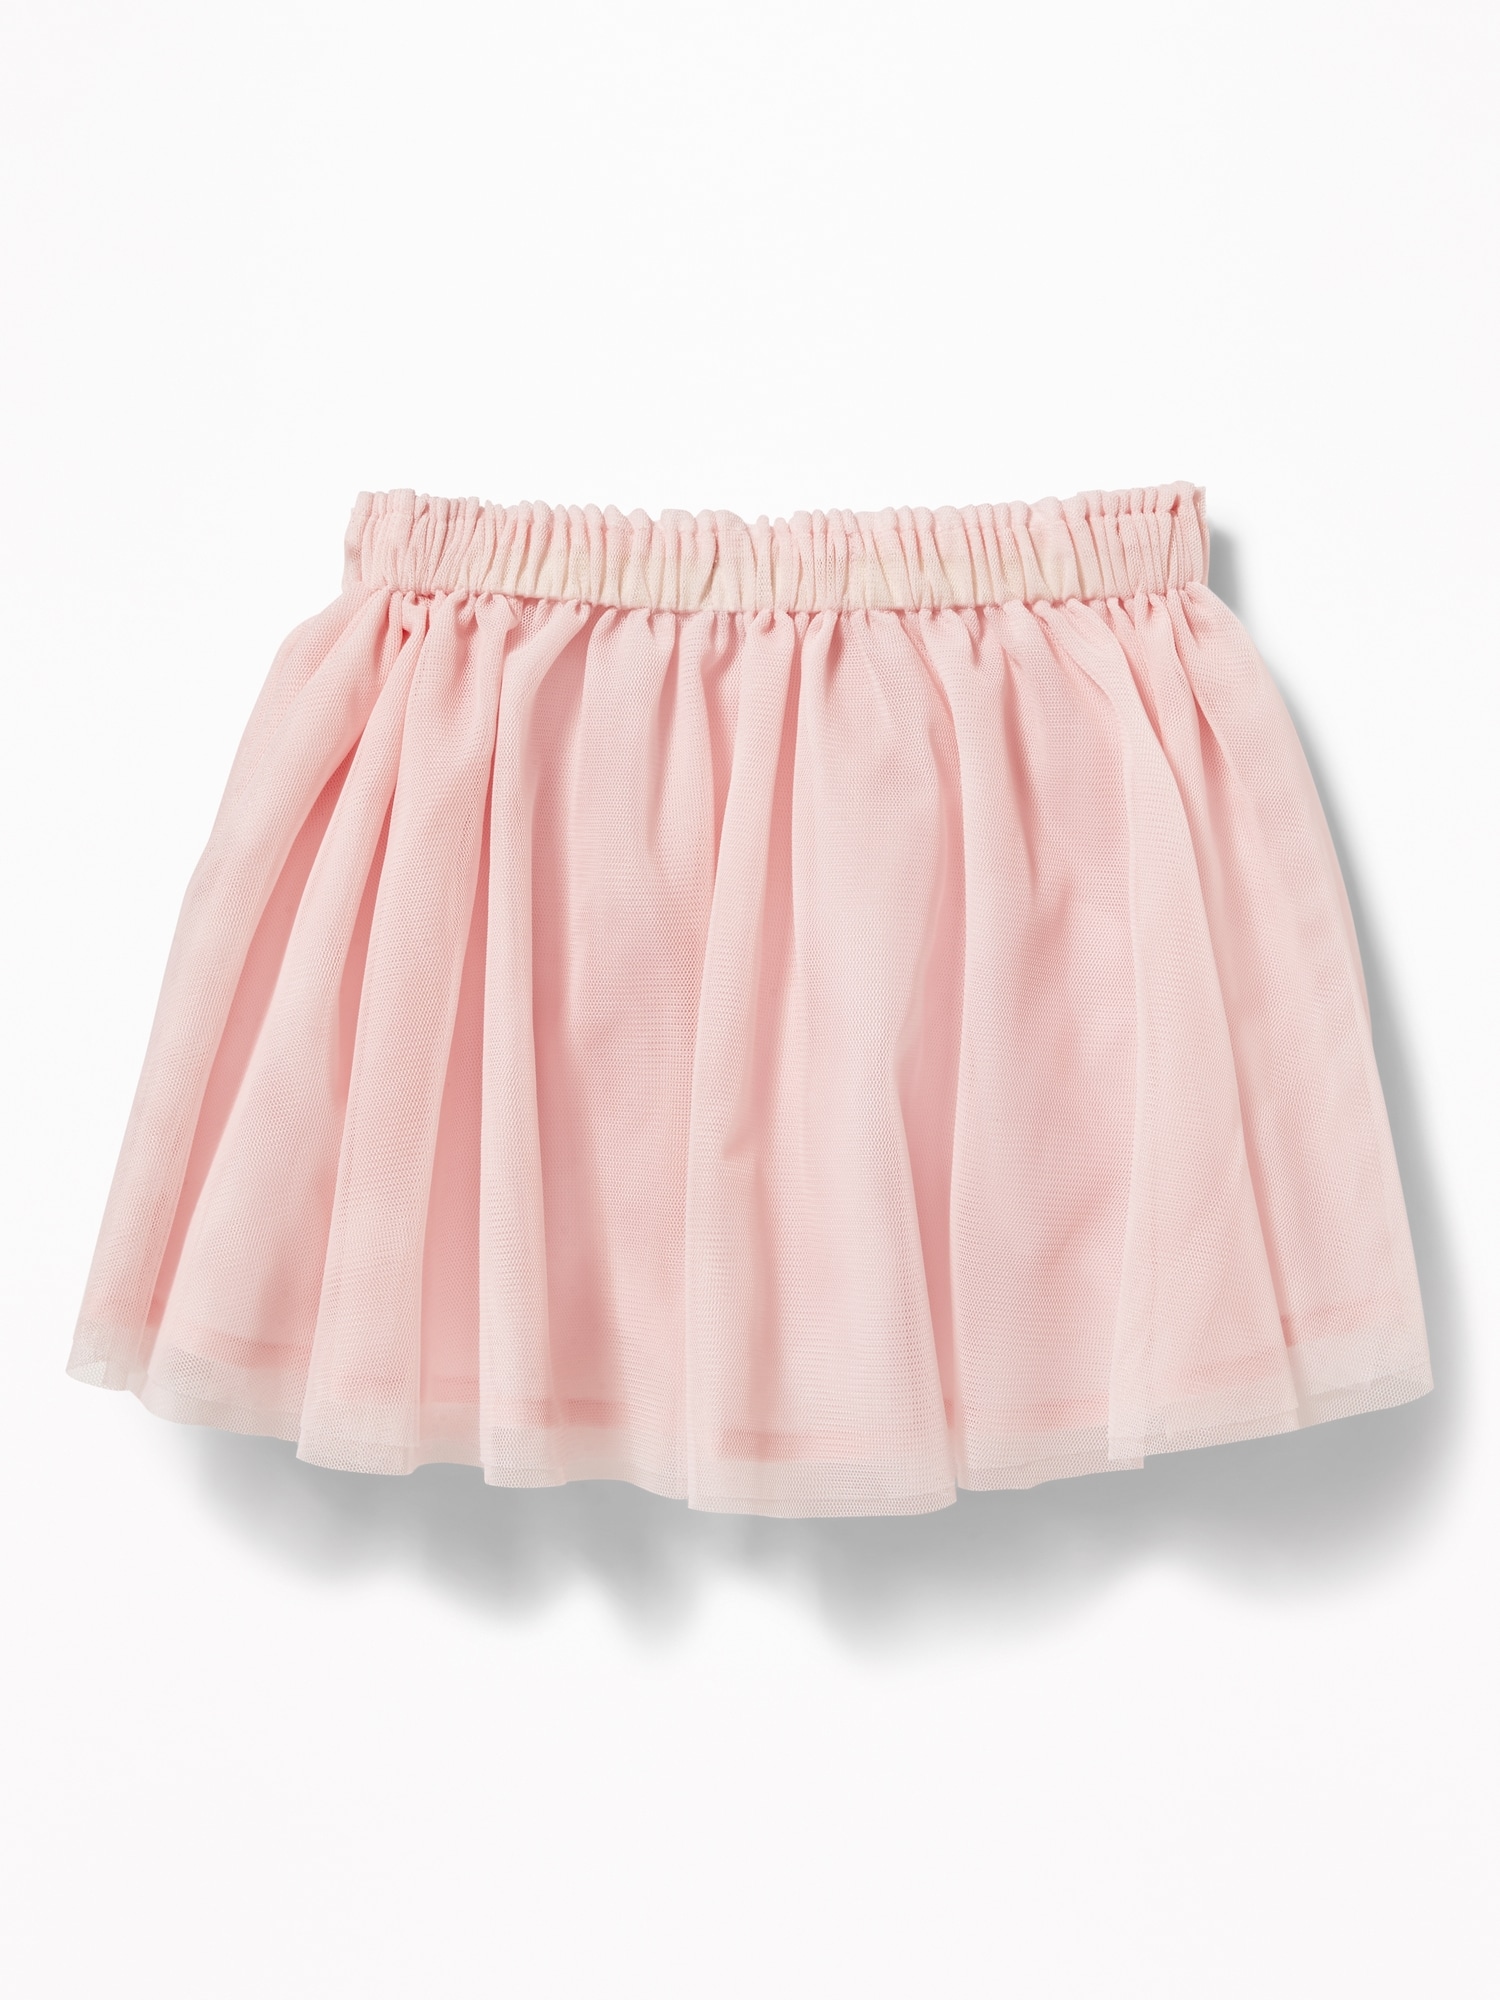 Tulle Tutu Skirt for Toddler Girls | Old Navy